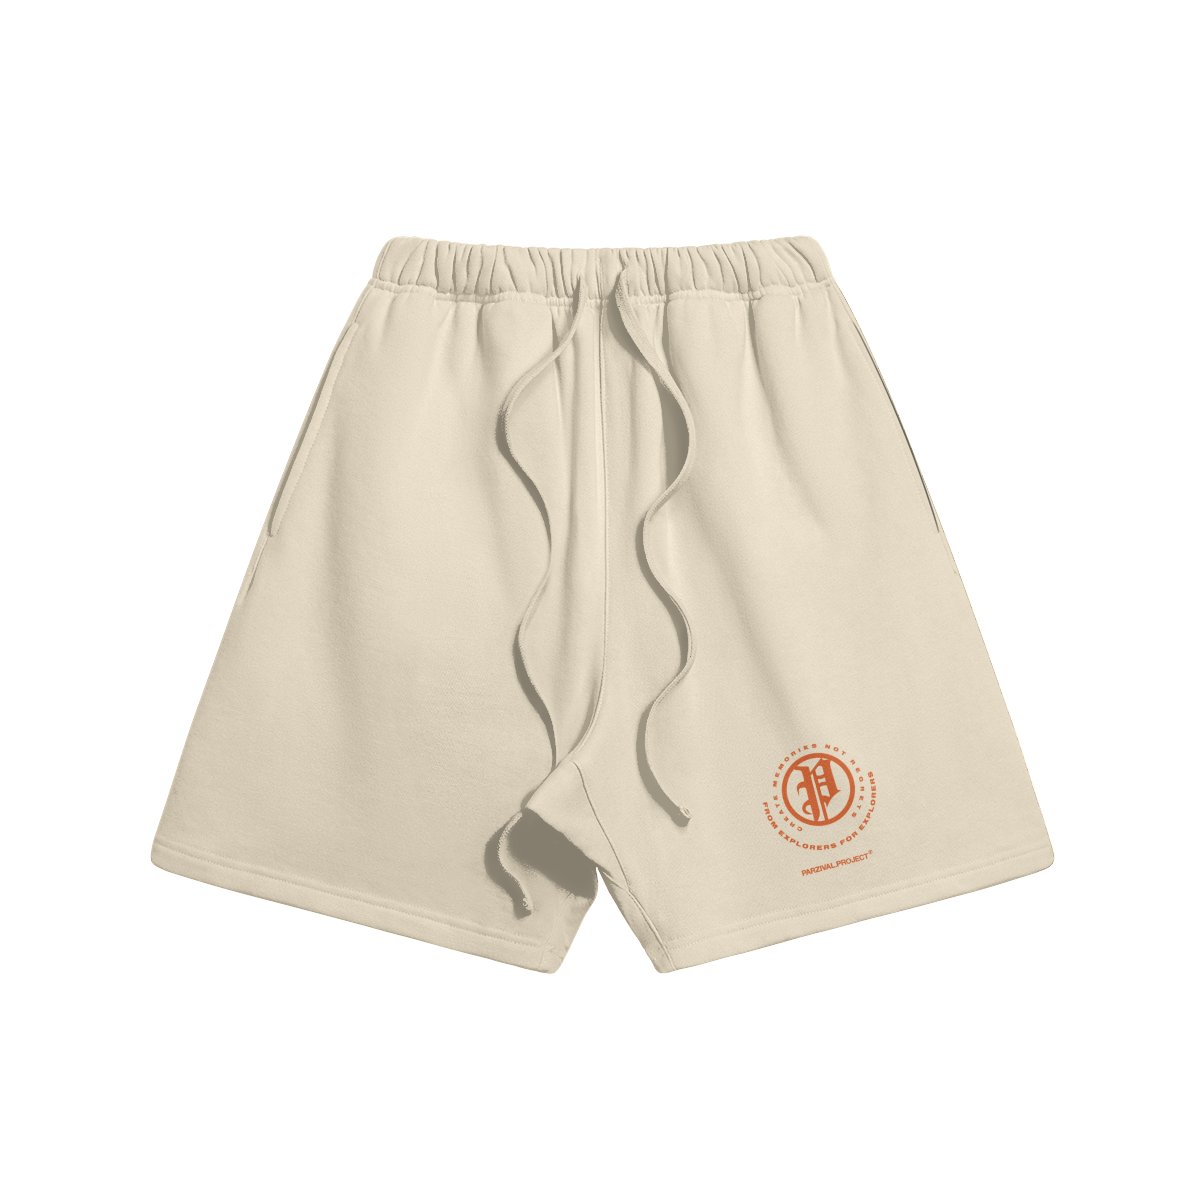 explorer shorts - orange logo